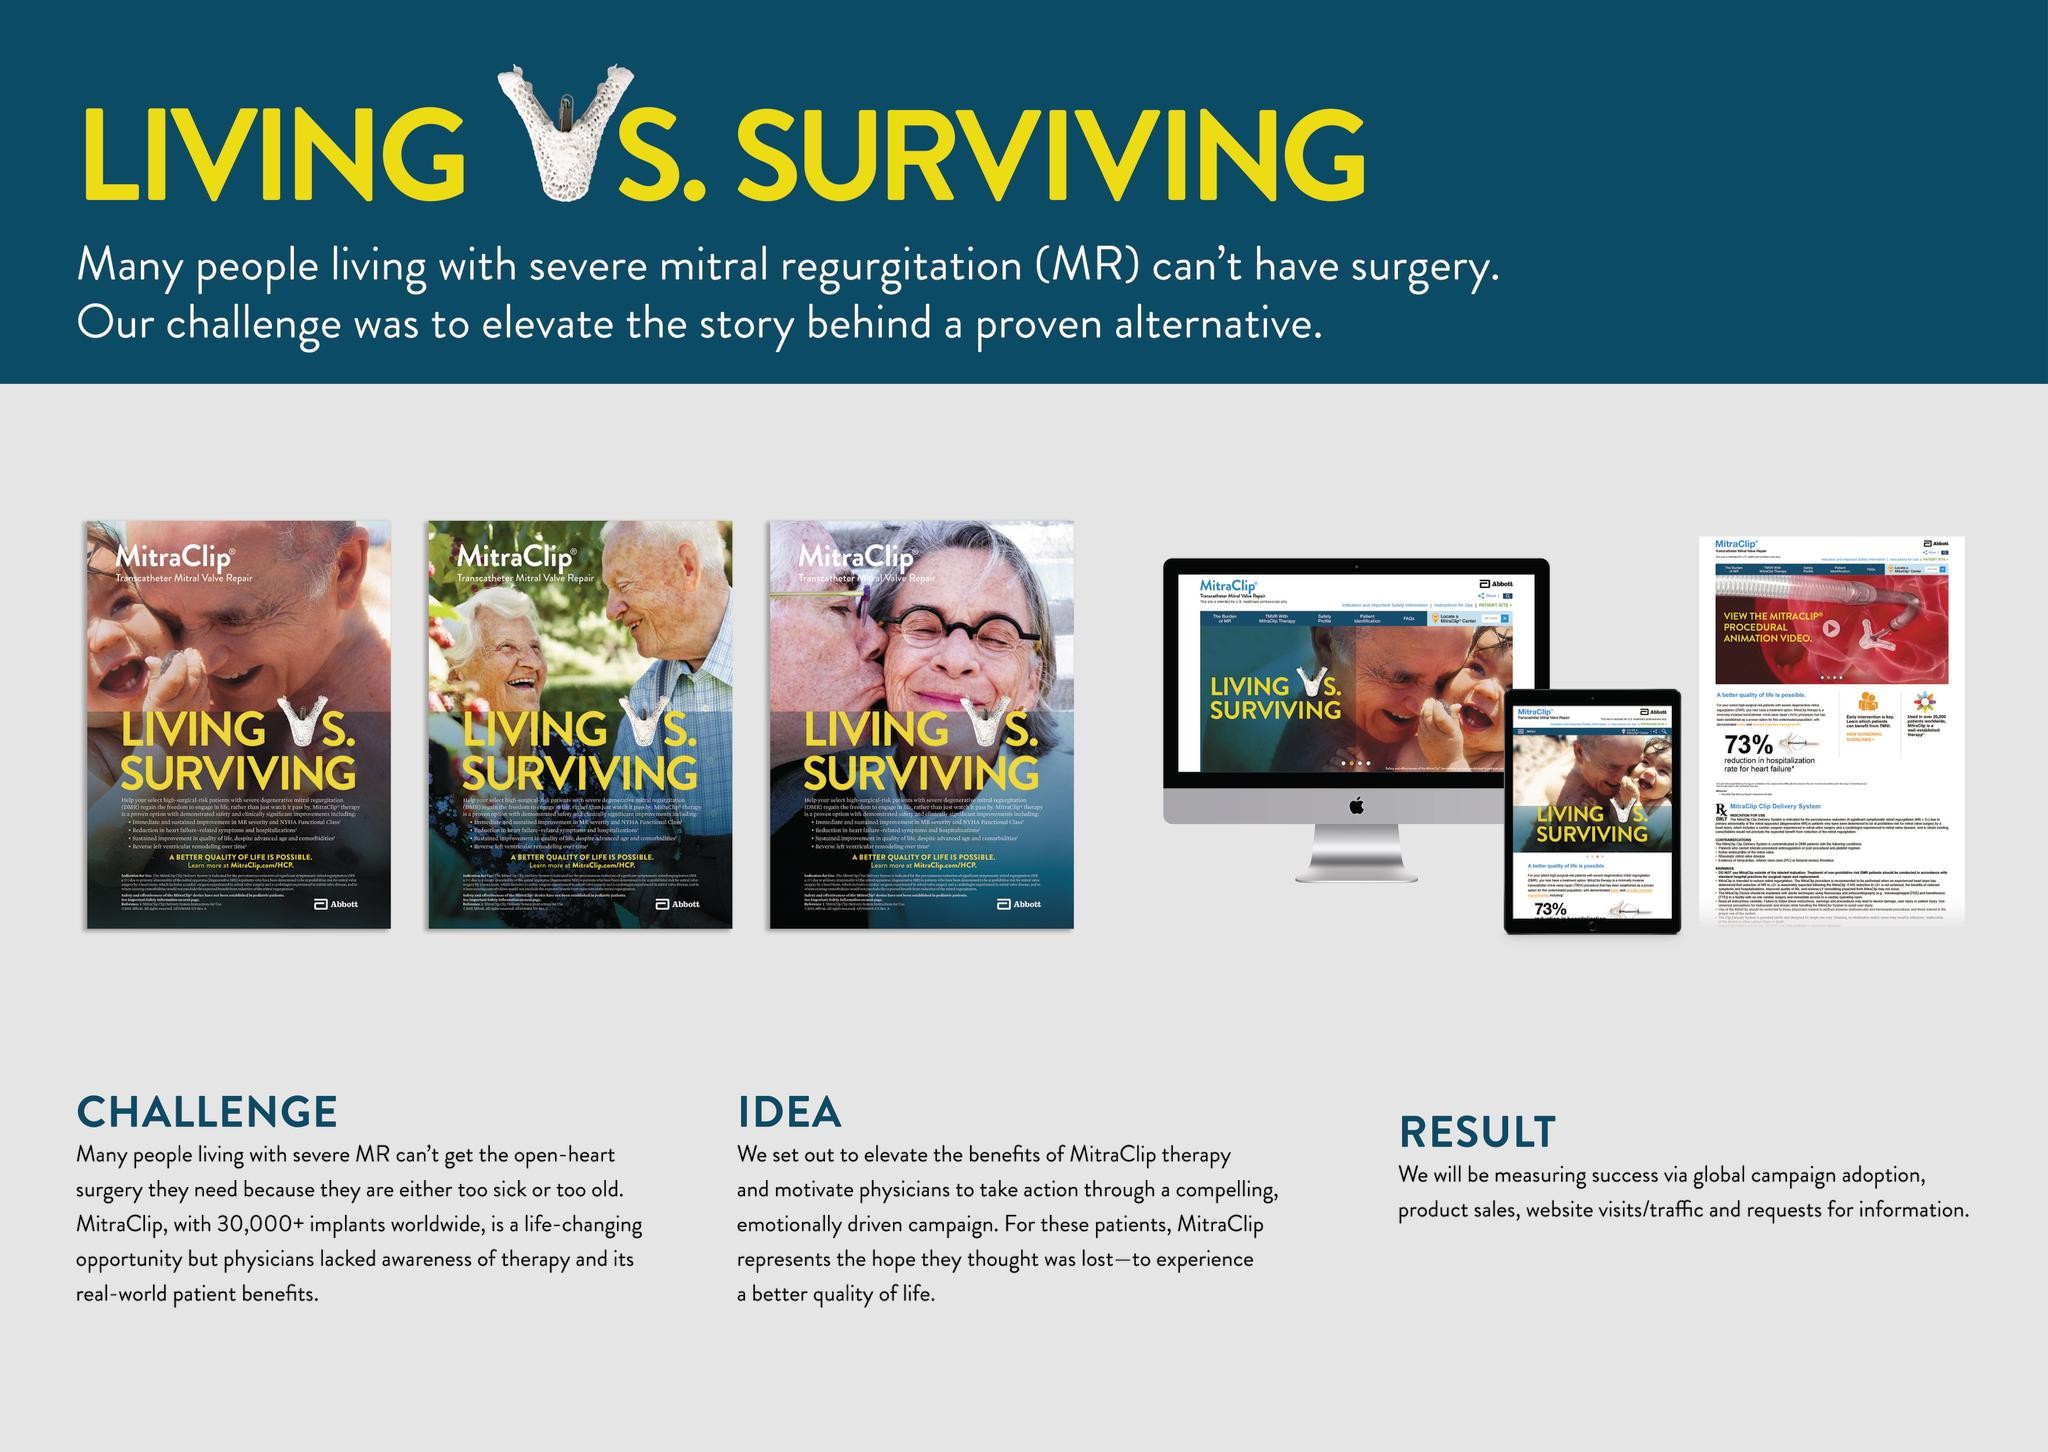 Living vs. Surviving Campaign